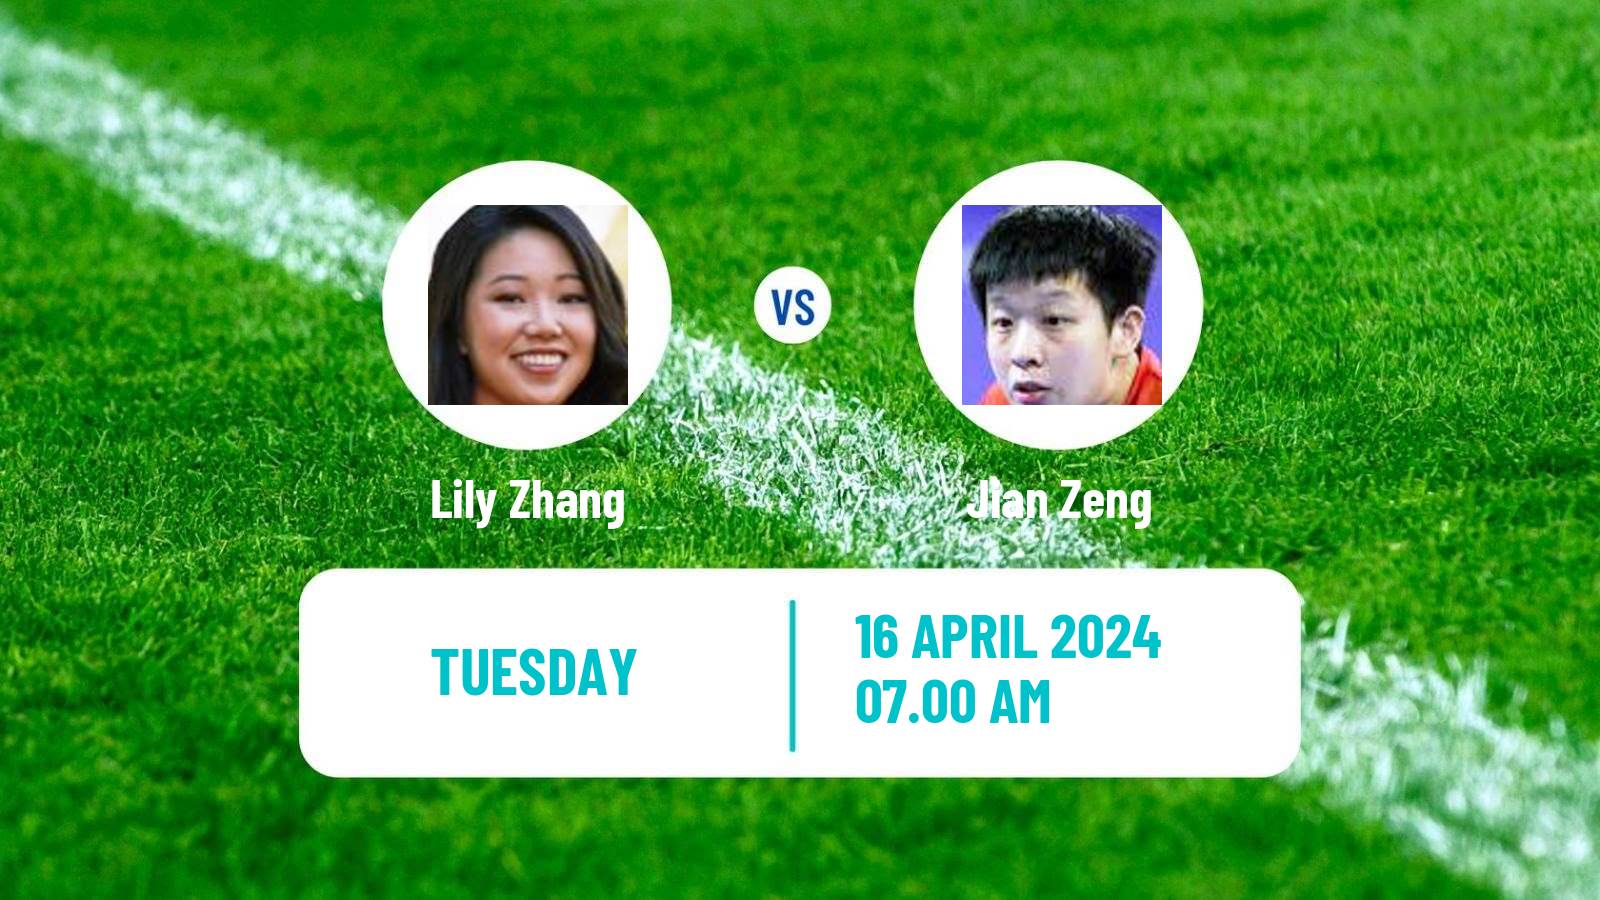 Table tennis World Cup Women Lily Zhang - Jian Zeng